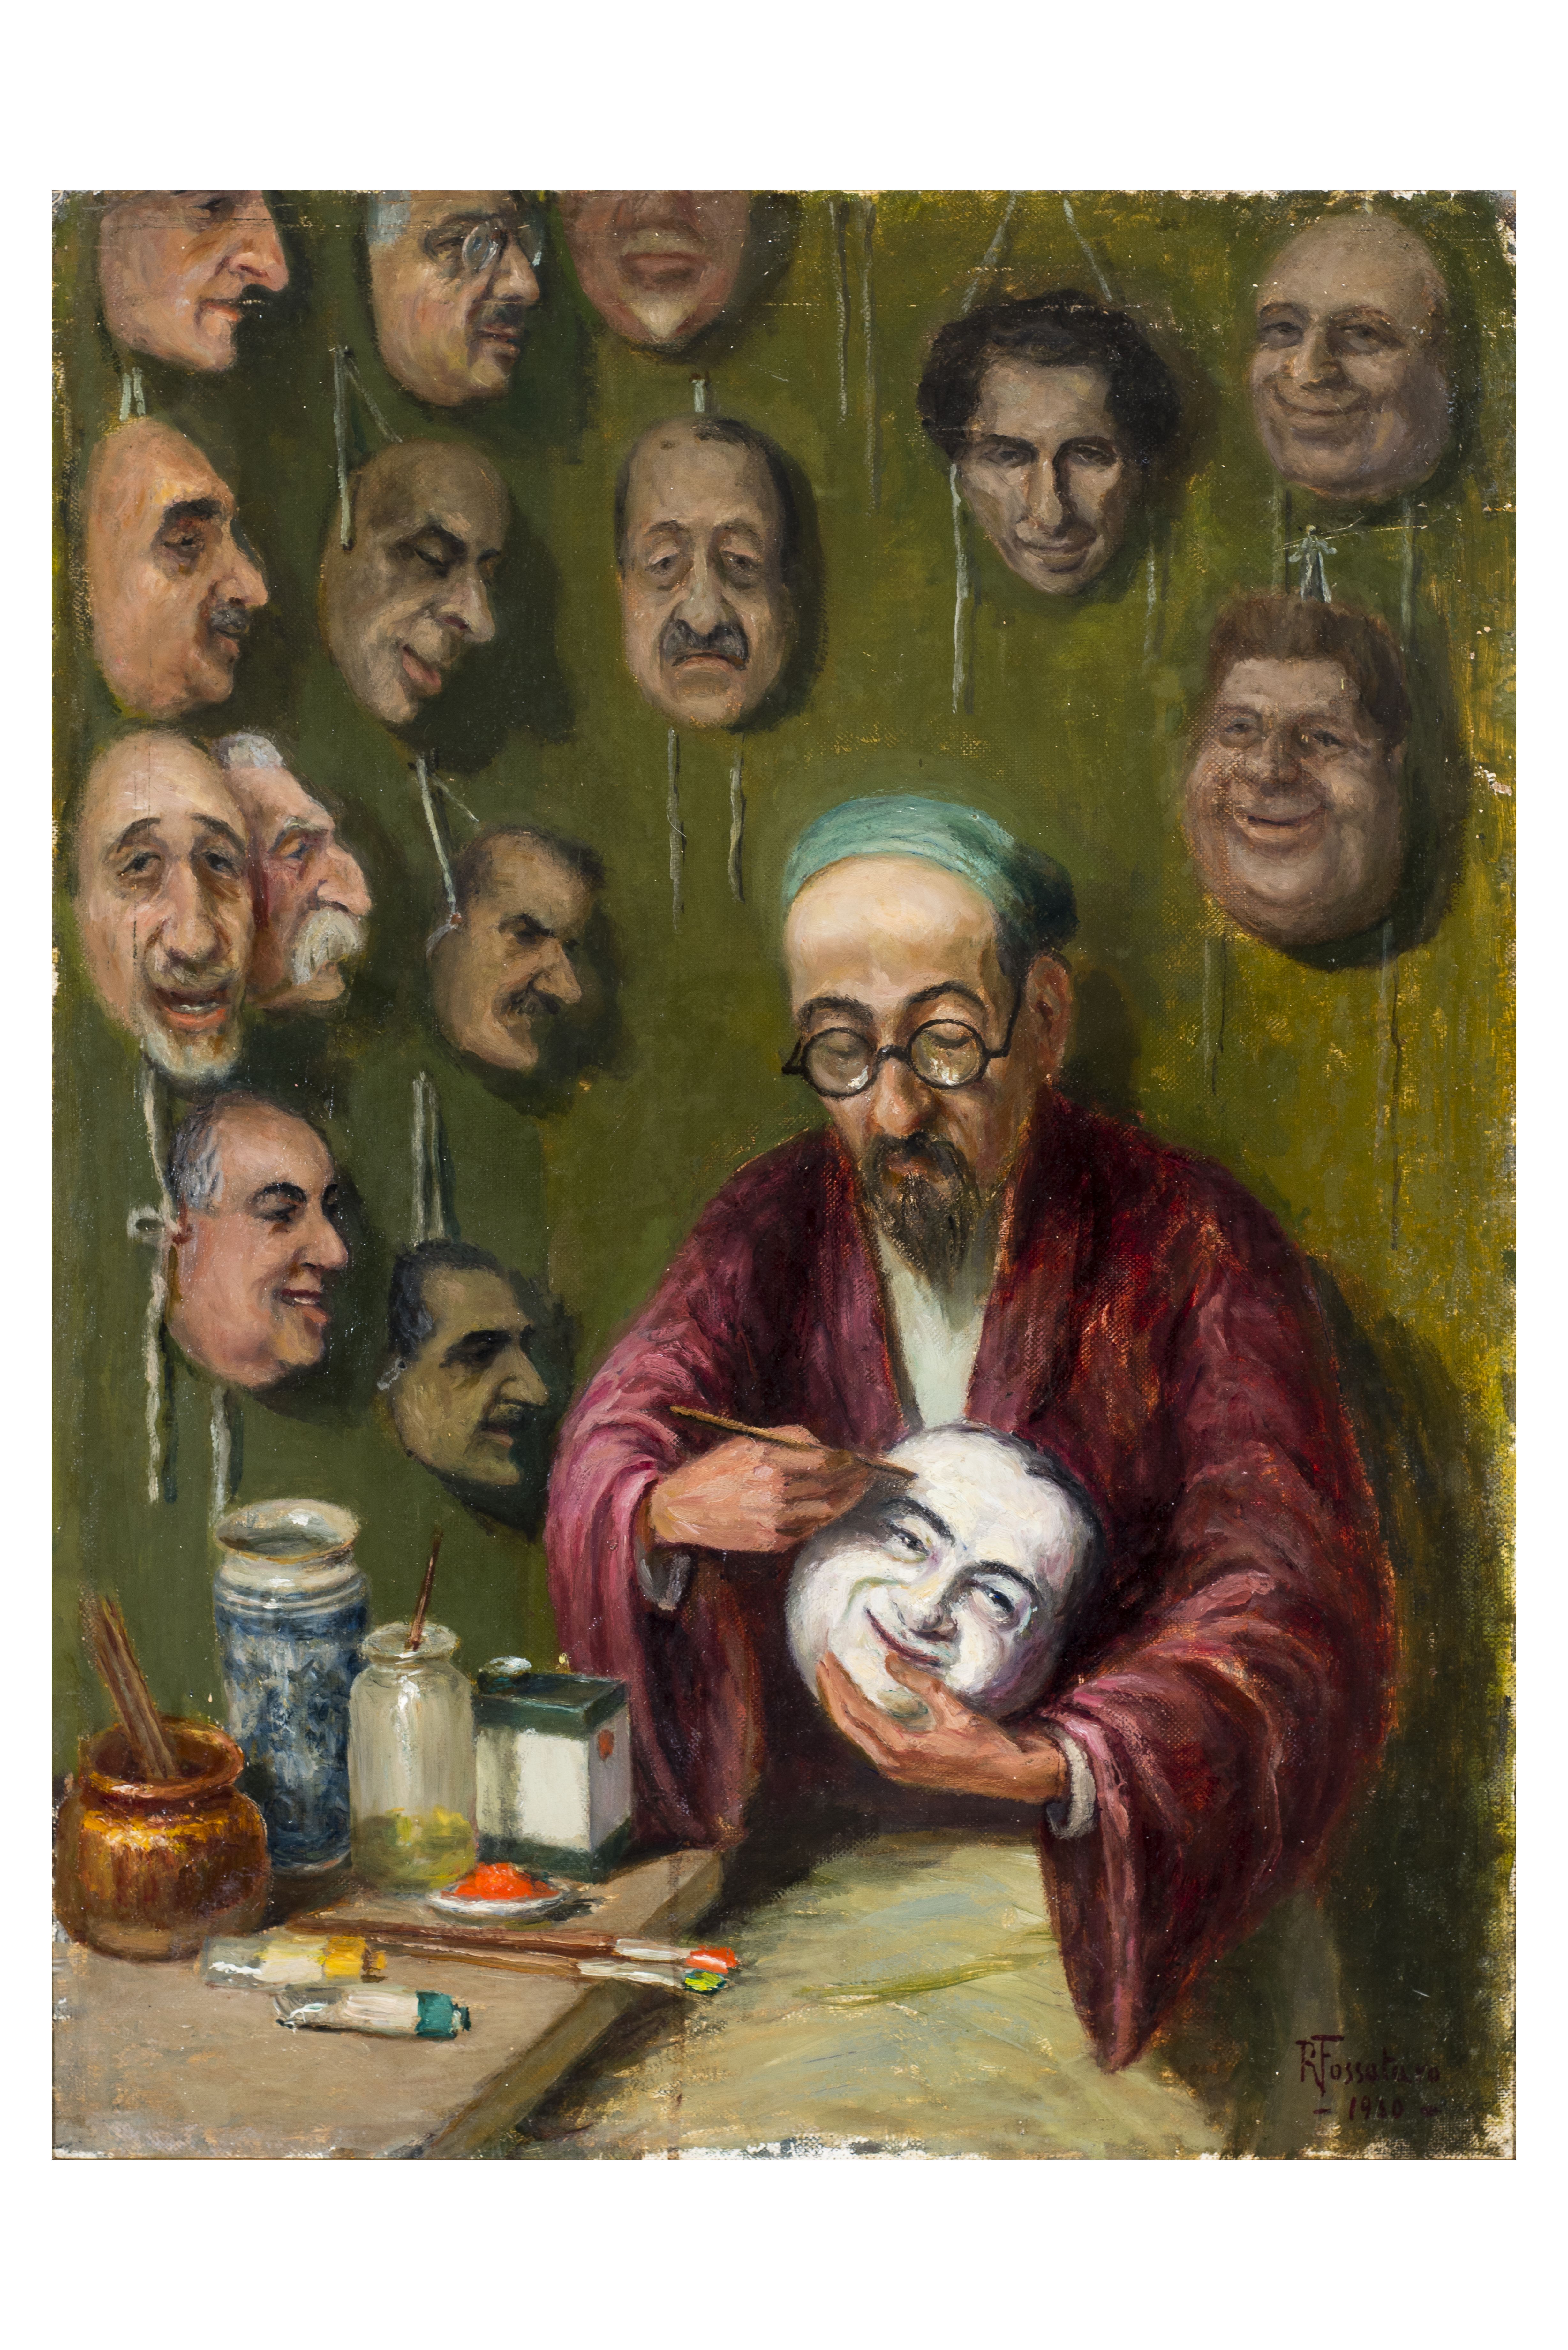 La fabbrica delle maschere, Ritratto d'uomo (dipinto, opera isolata) di Fossataro, Raffaele (attribuito) - ambito Italia meridionale (prima metà XX)